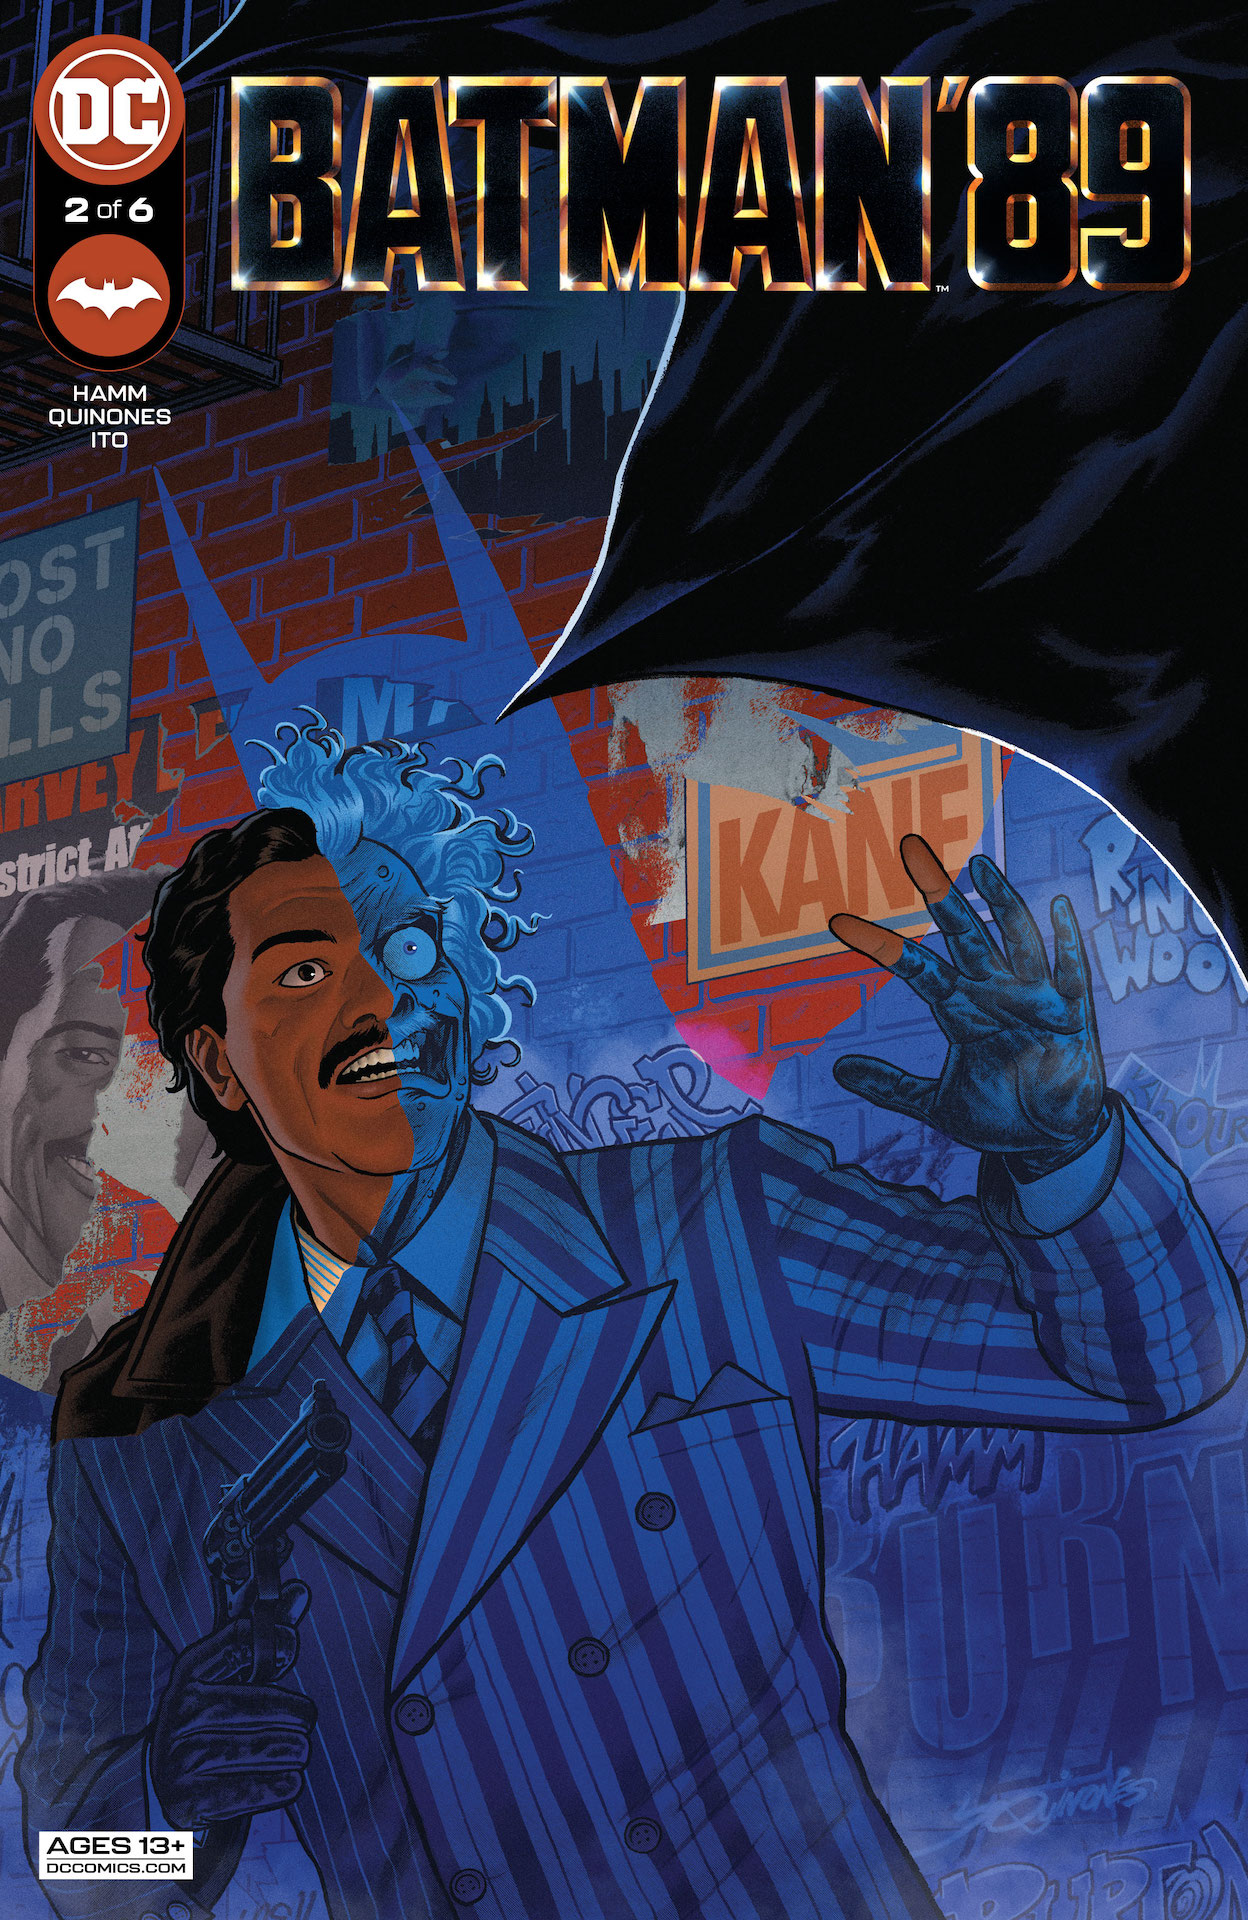 DC Preview: Batman '89 #2